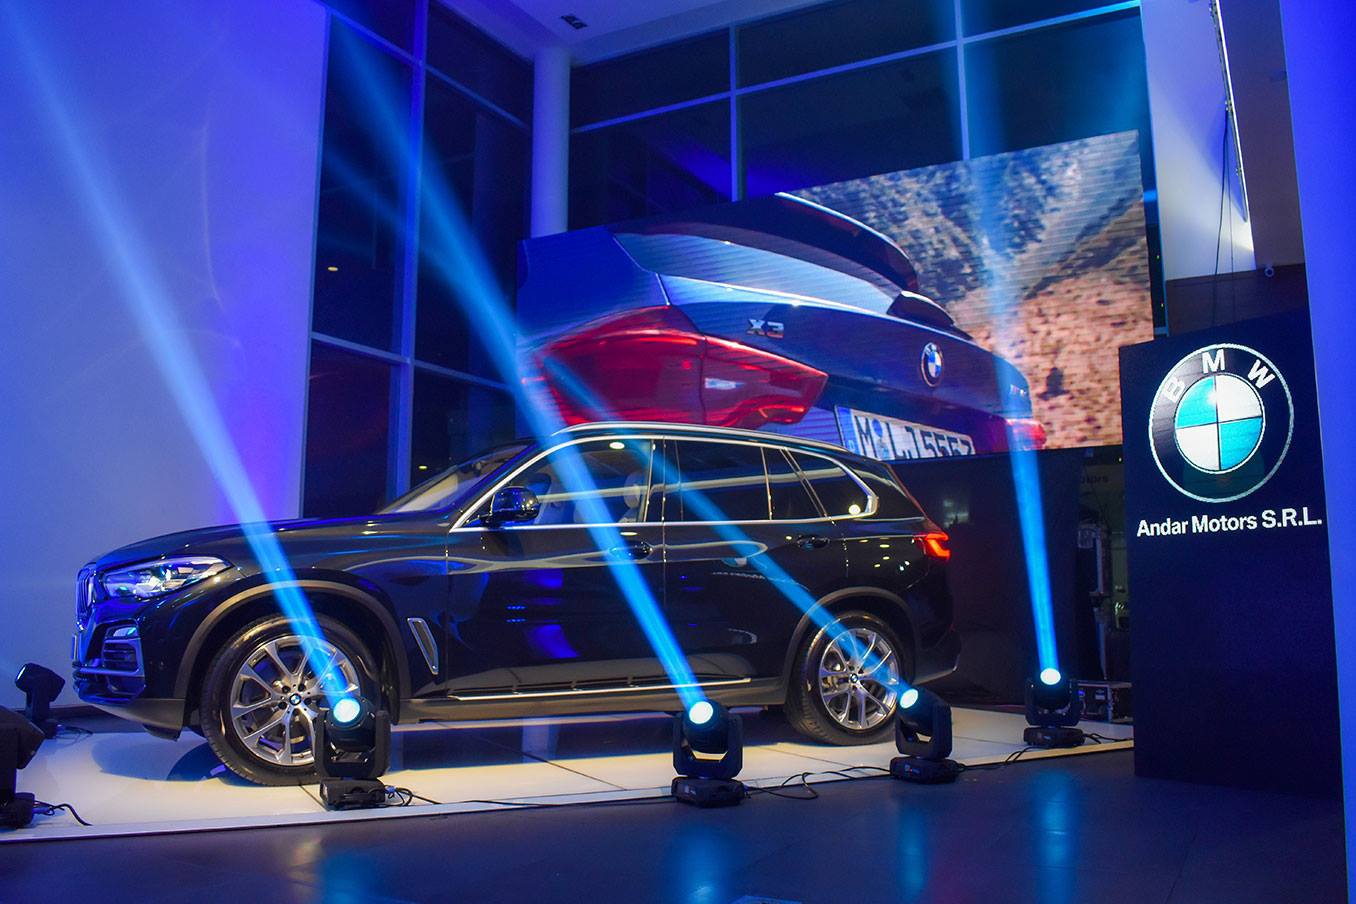 BMW X5 impresiona con sus innovaciones